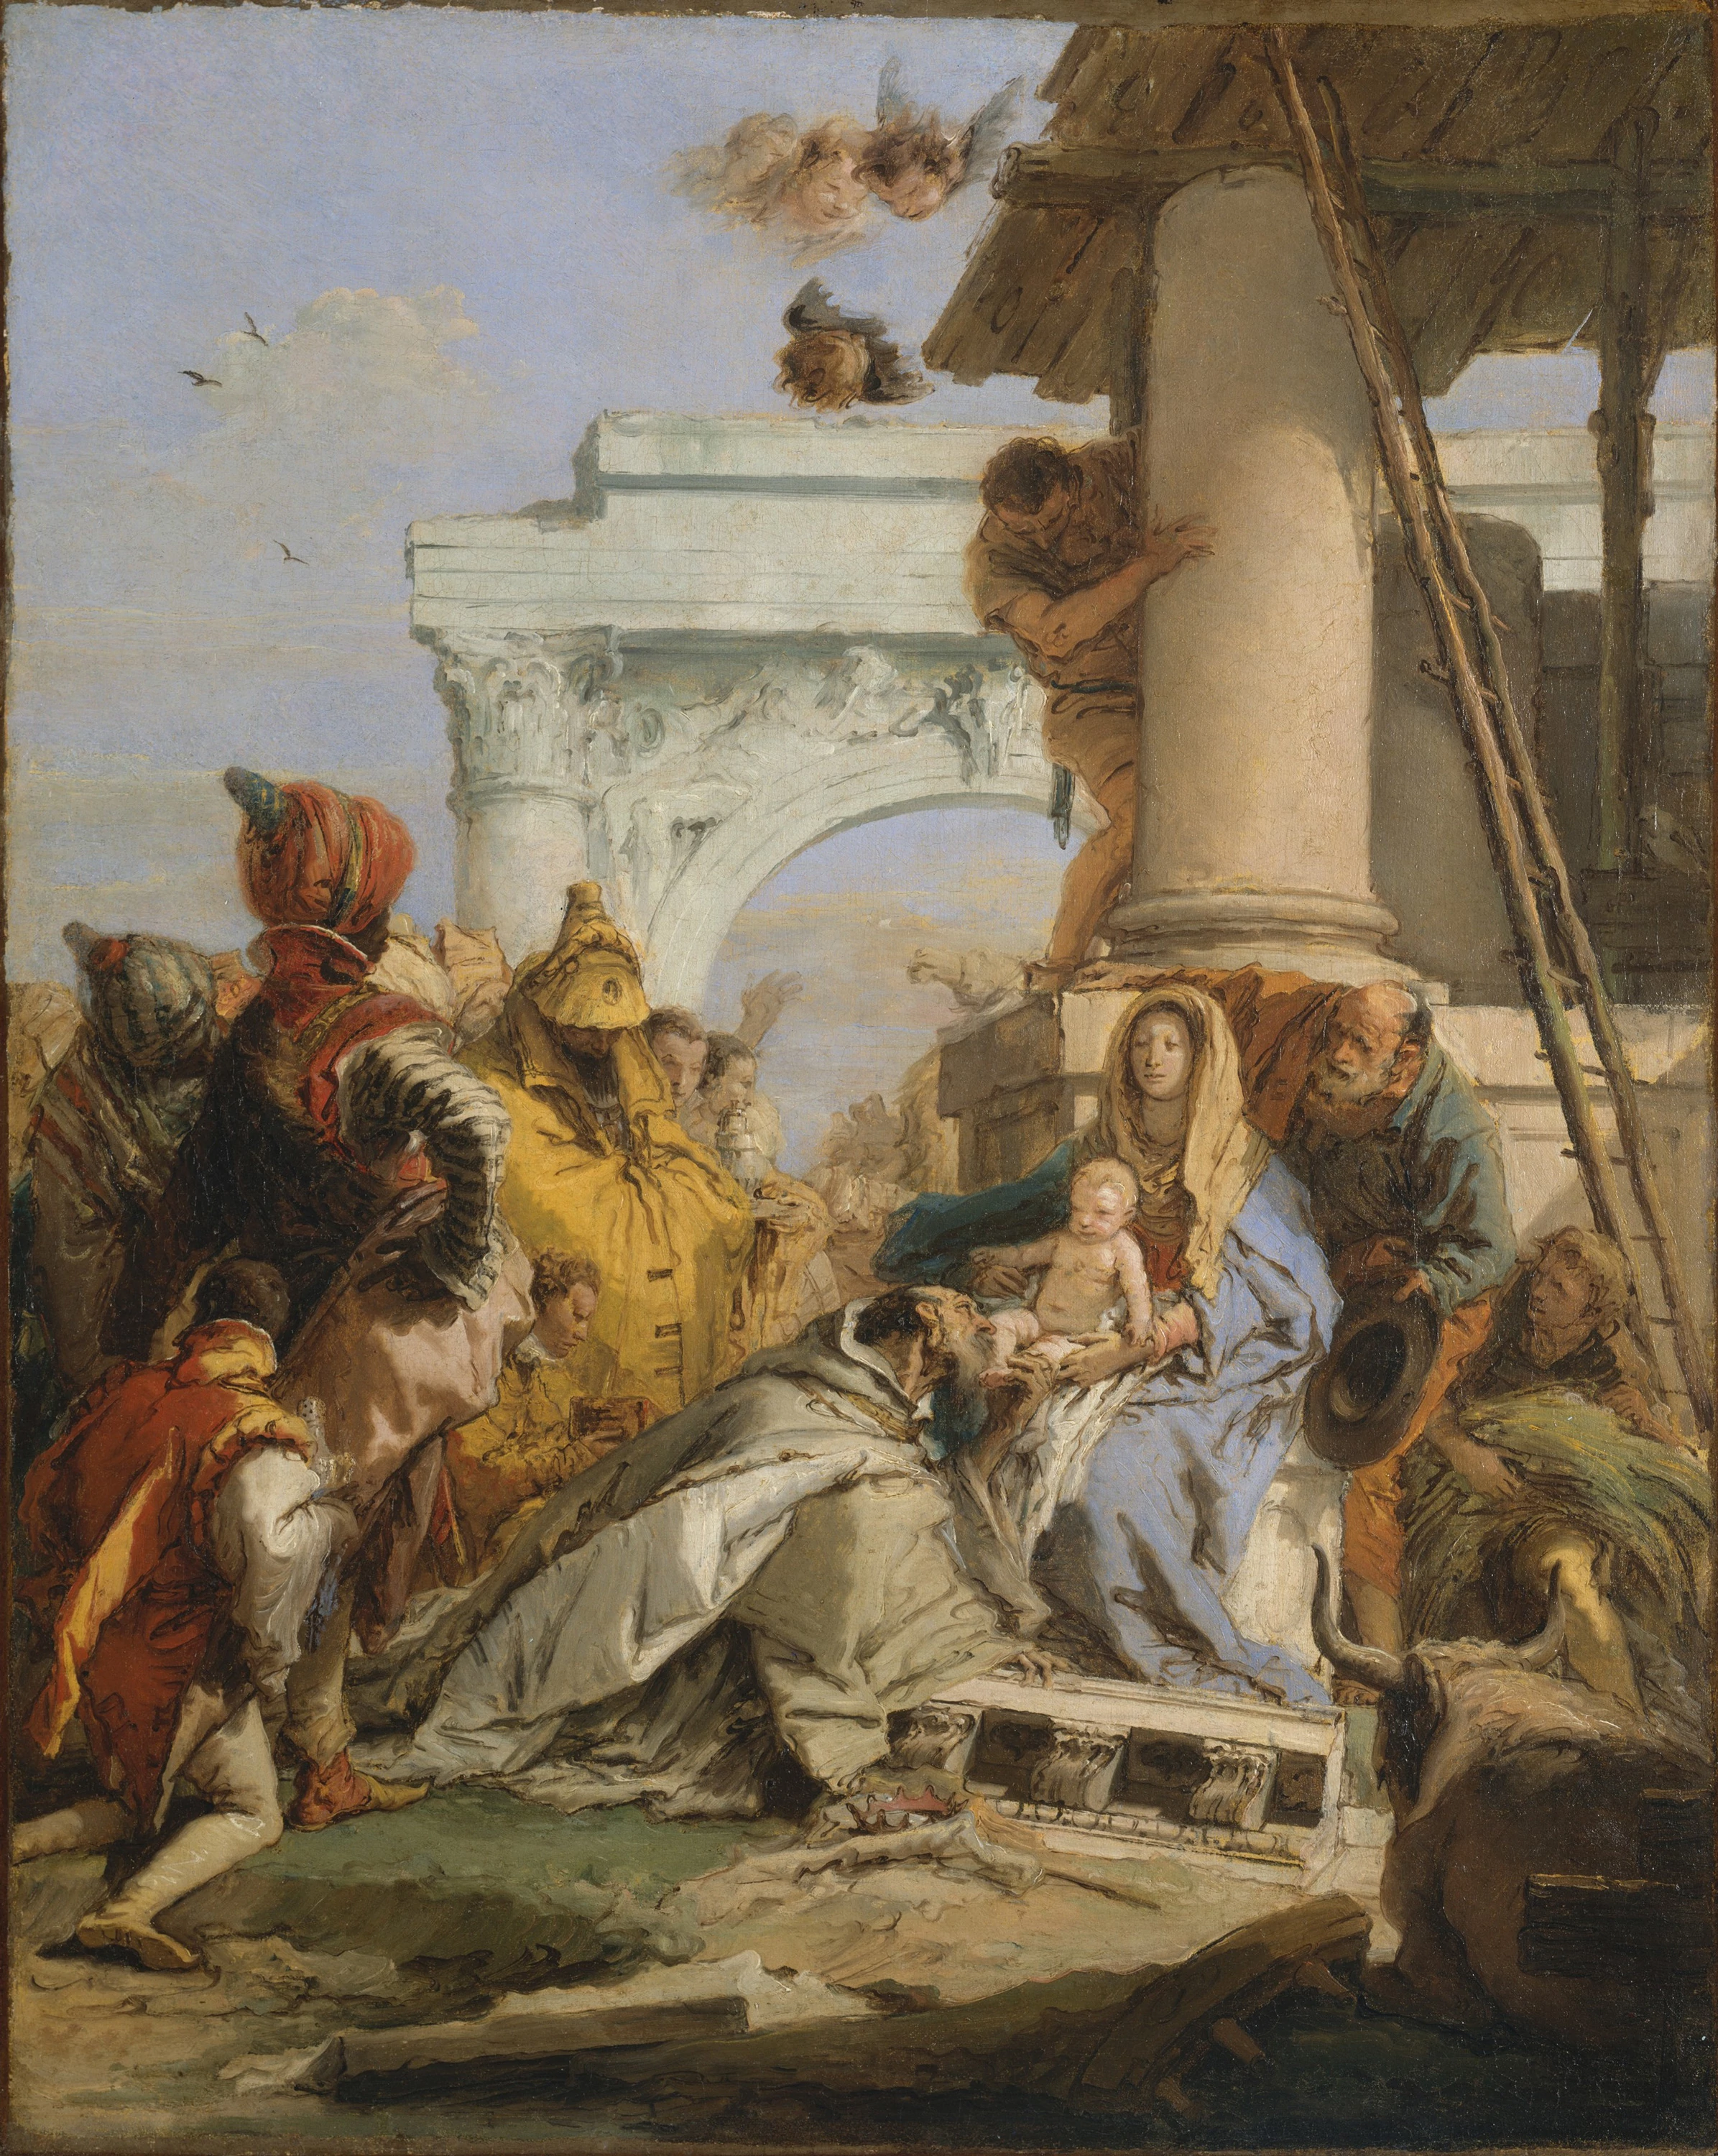 Sketch for the Adoration of the Magi, Giovanni Battista Tiepolo